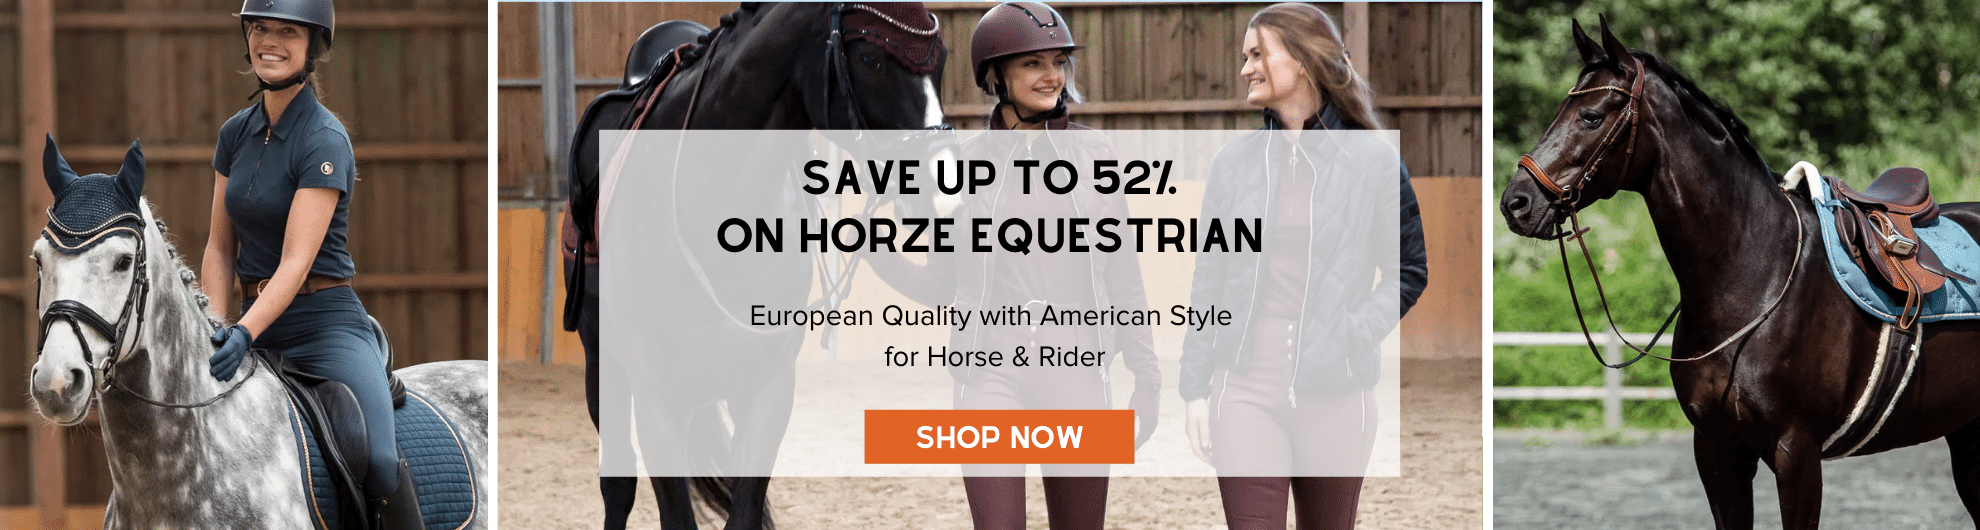 Horze Equestrian On Sale